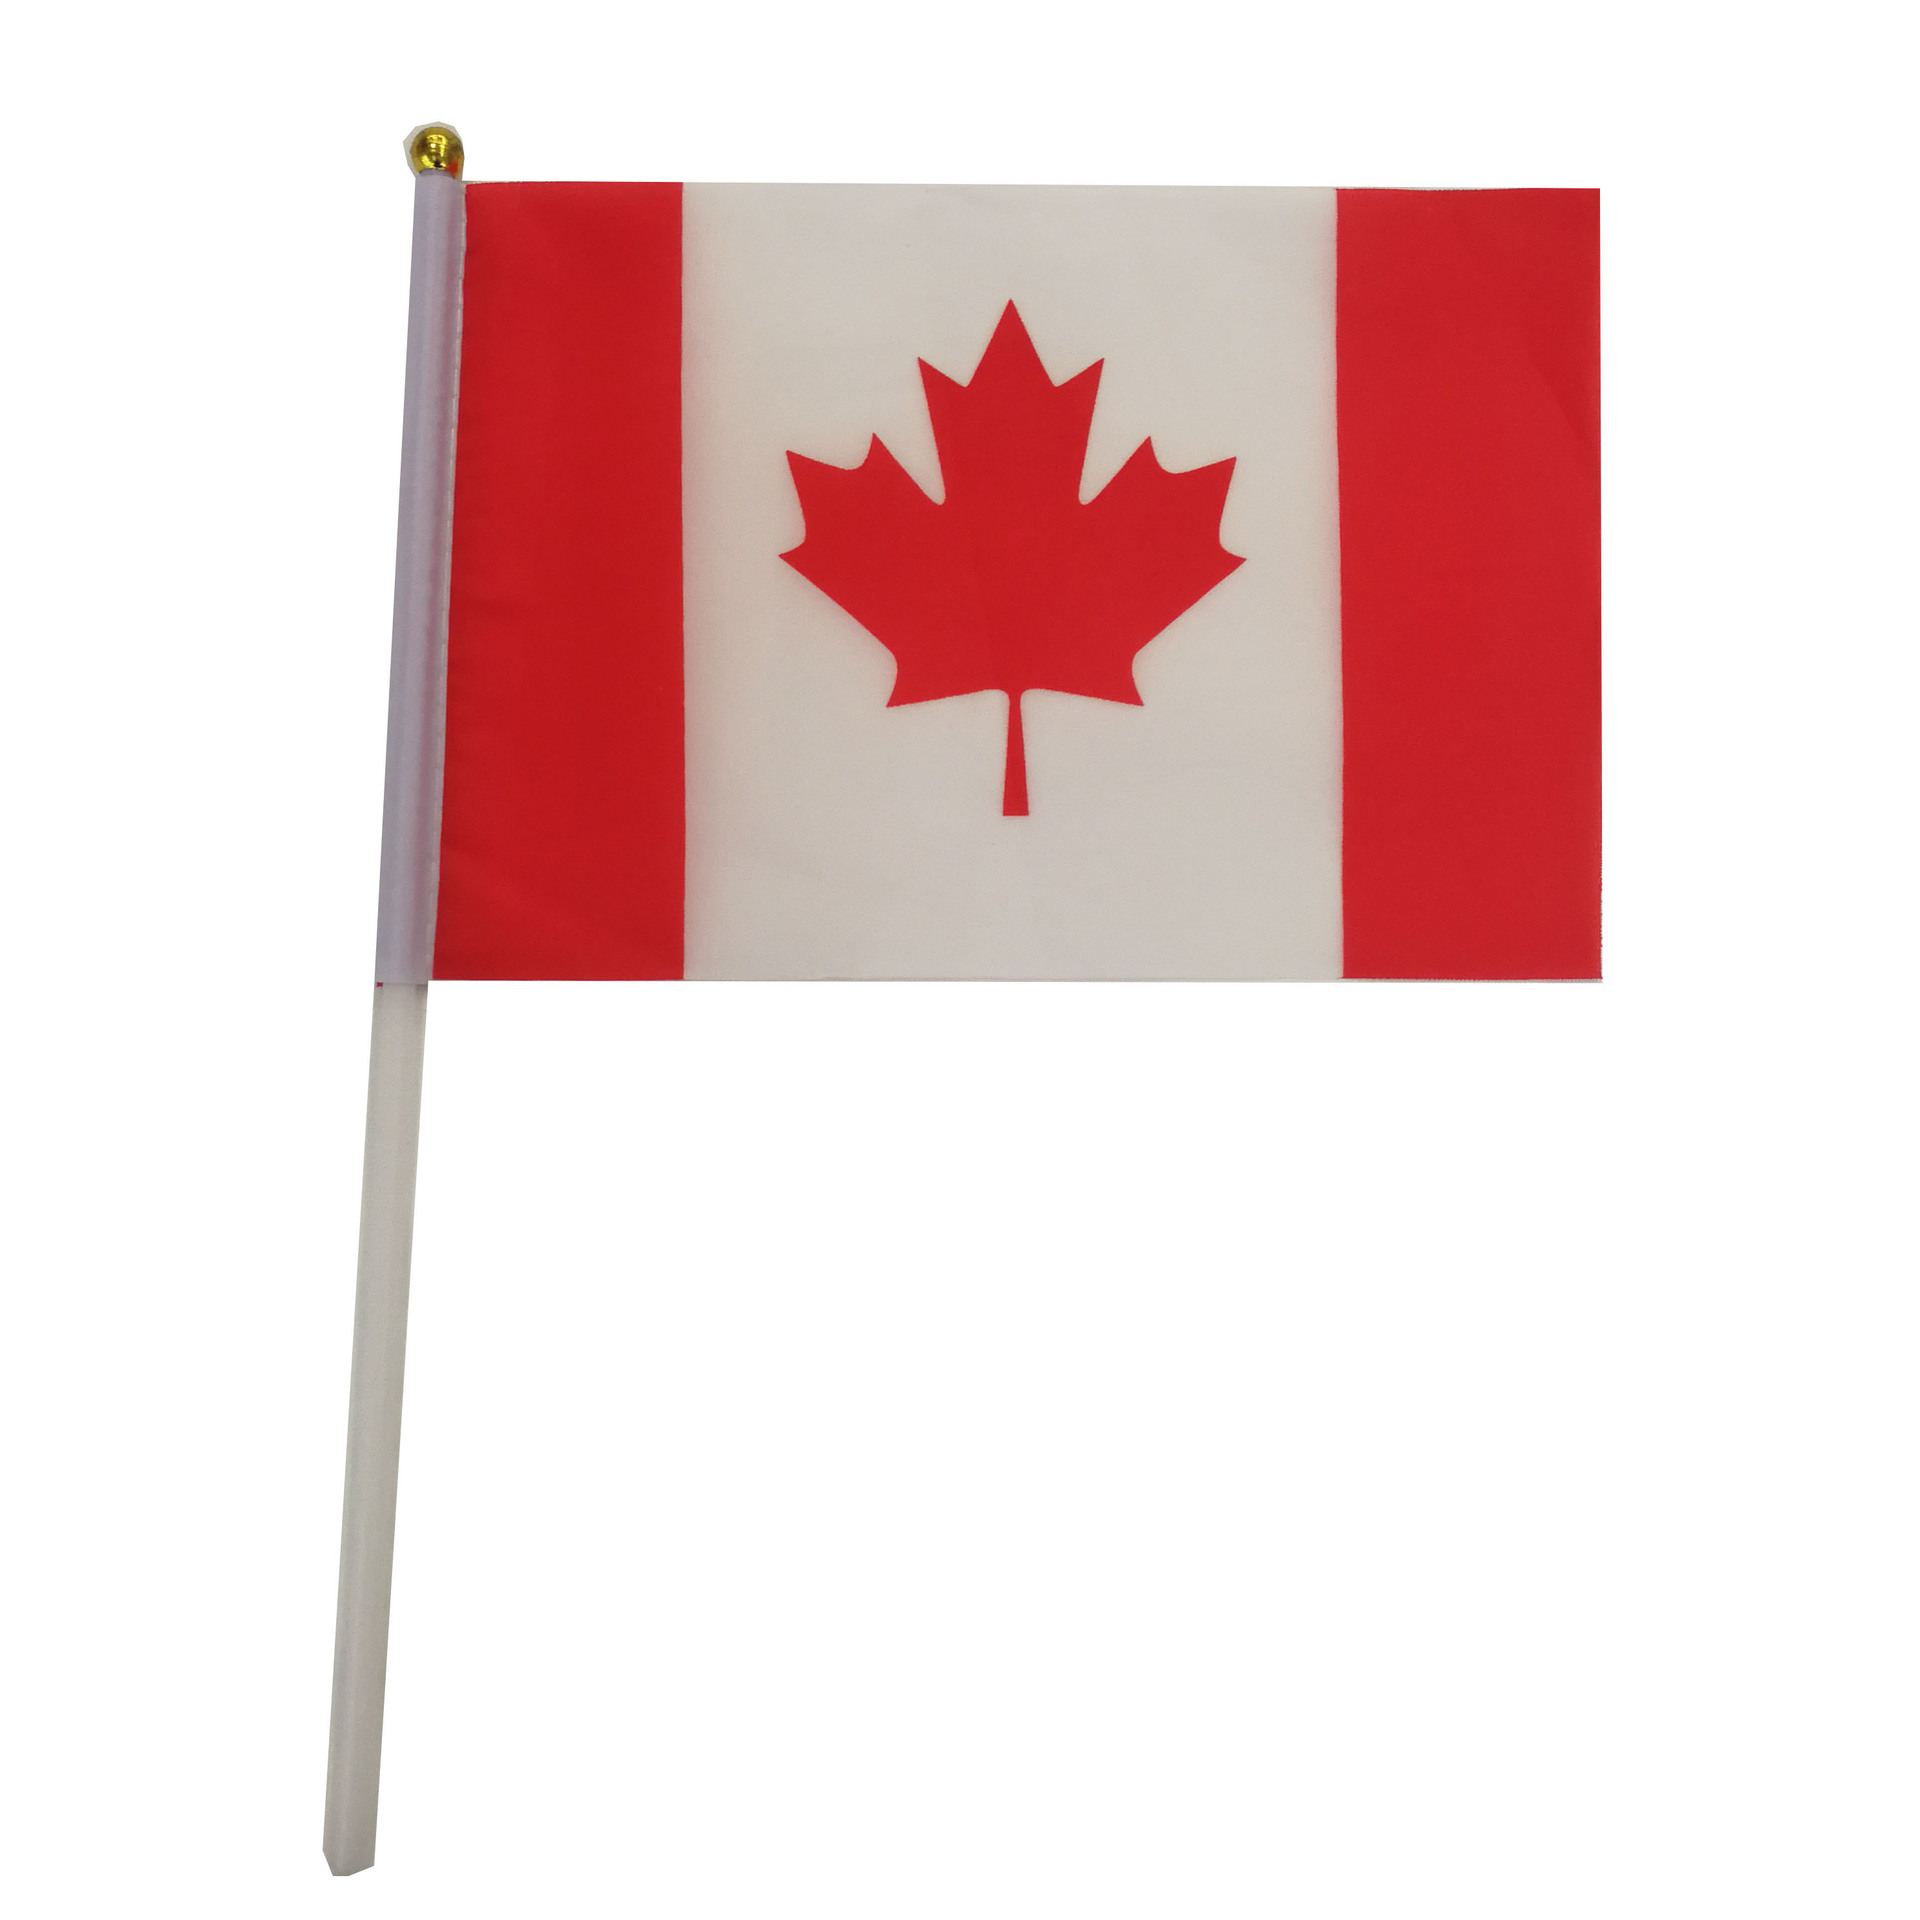 8号加拿大国旗14*21cm涤纶旗帜厂家现货canada手摇国旗批发含杆